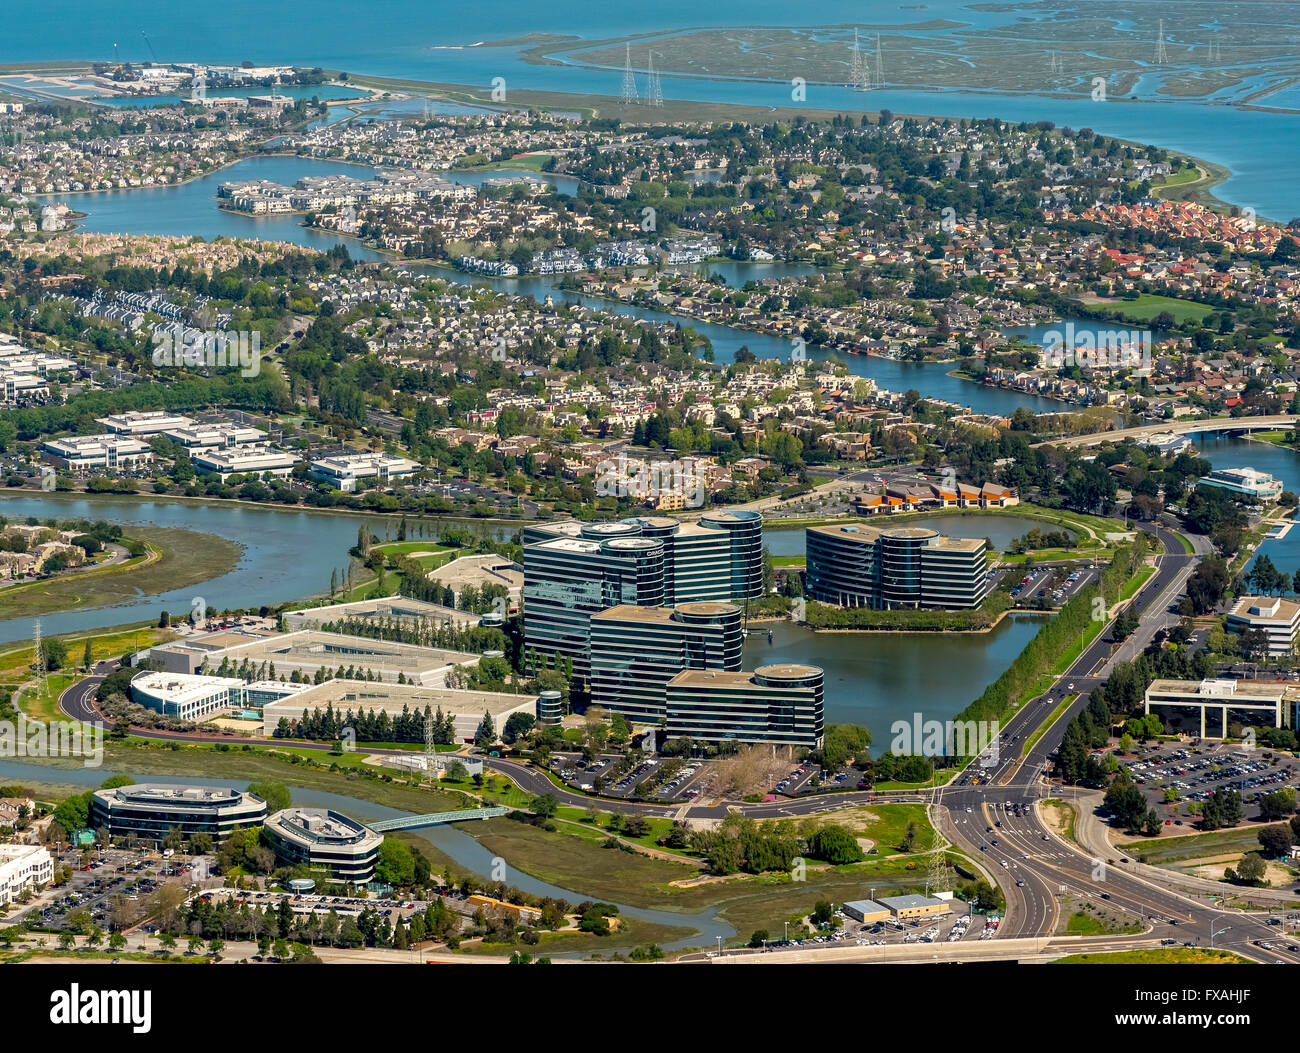 Oracle-Hauptsitz in Redwood Shores, Silicon Valley, Kalifornien, USA Stockfoto